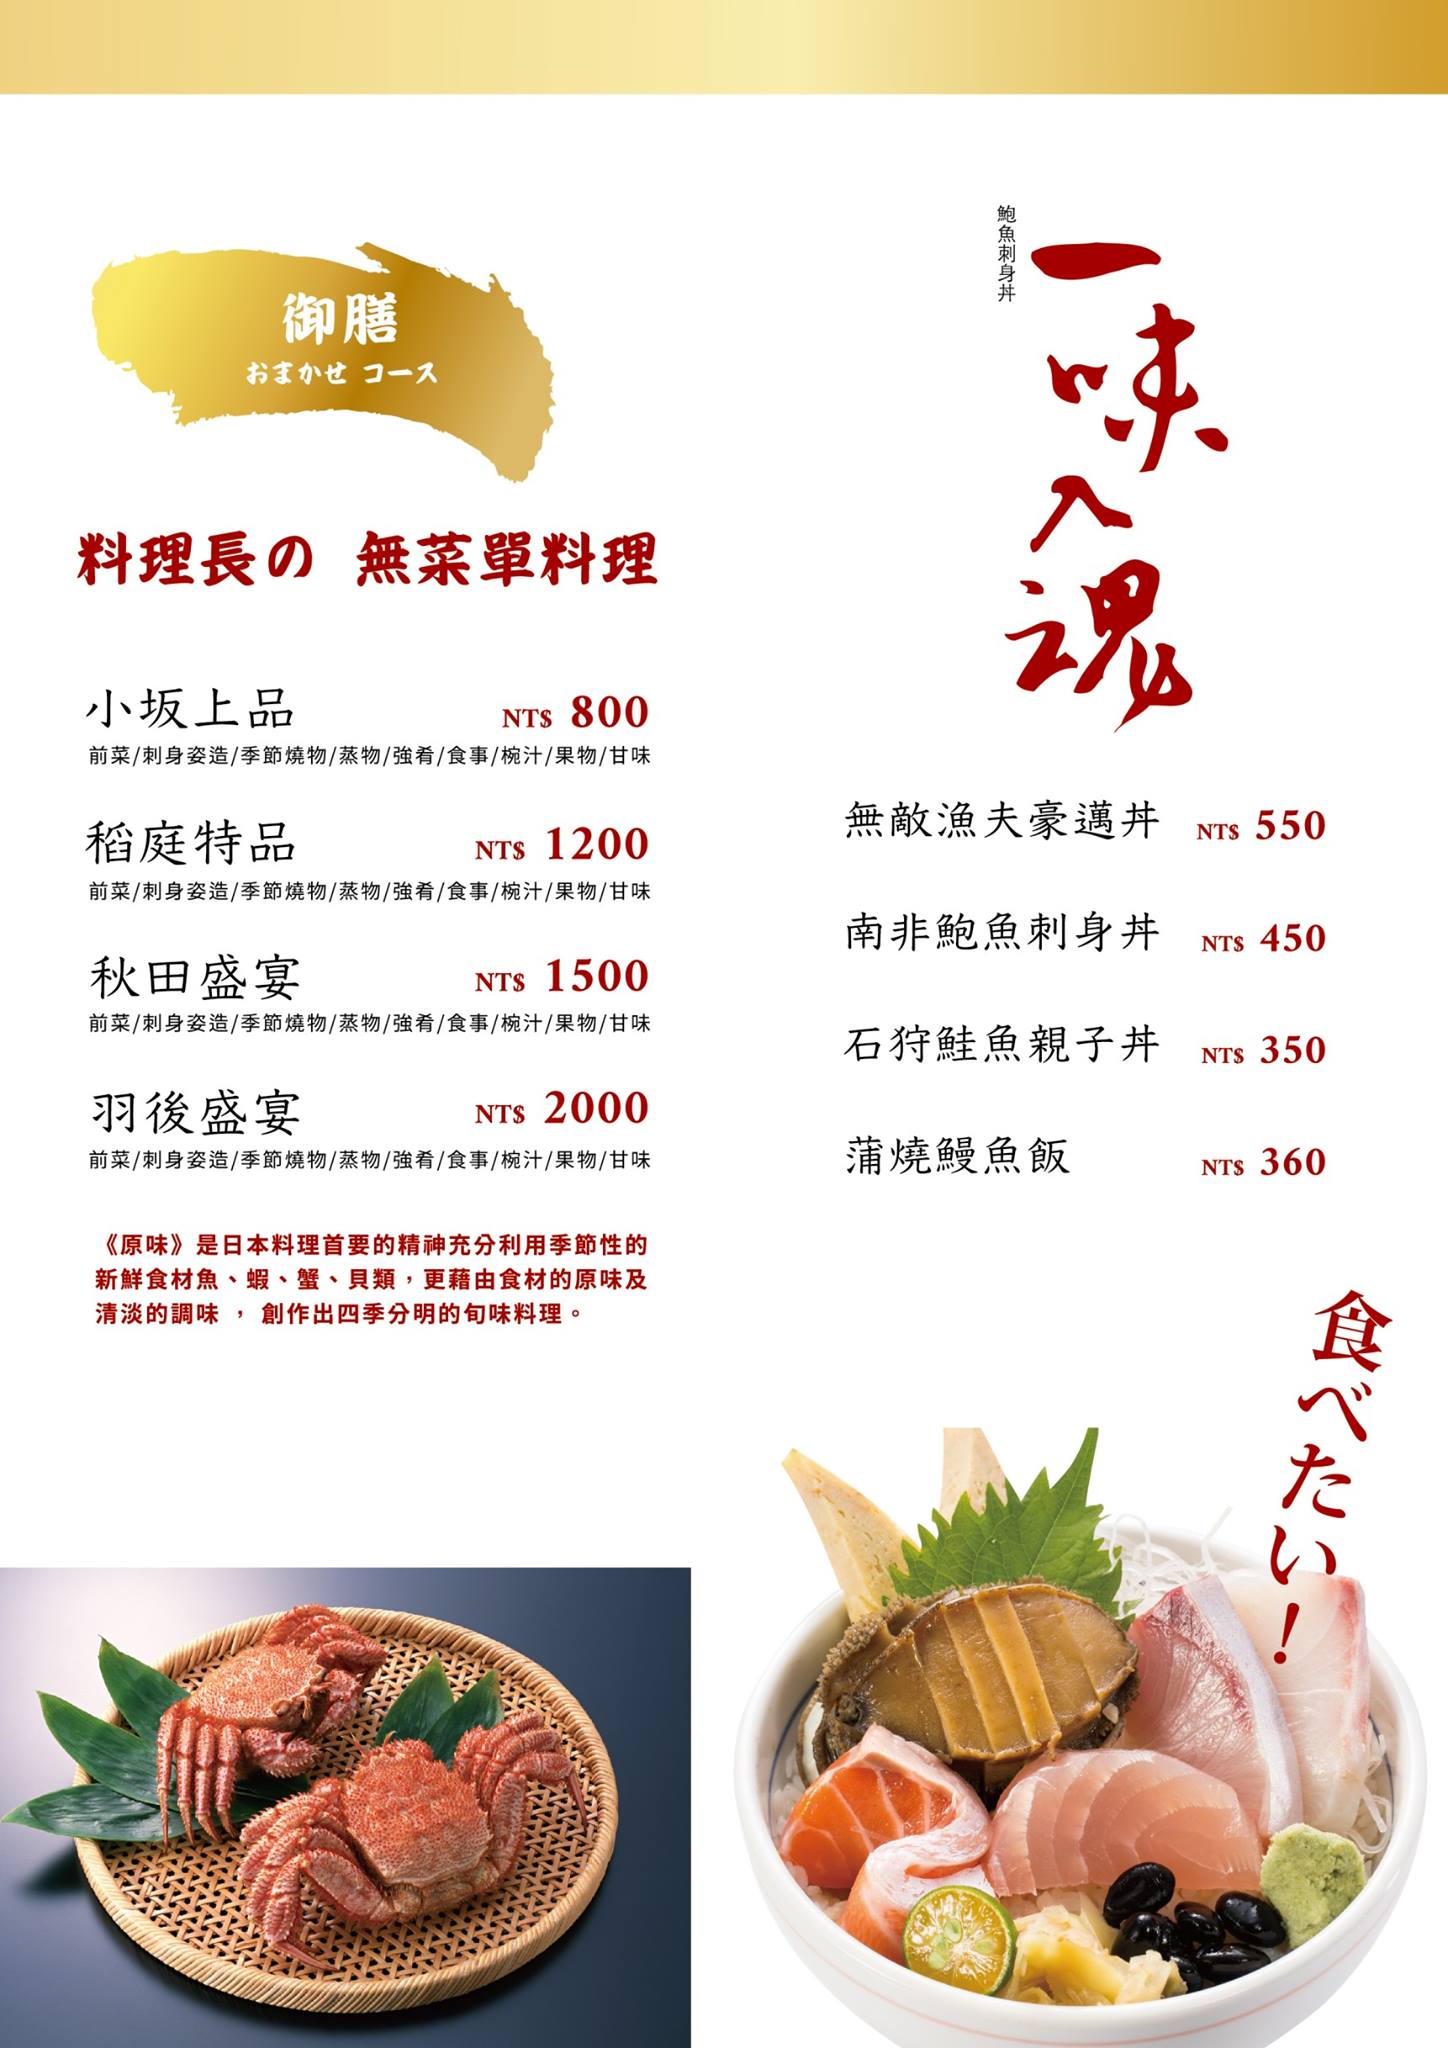 日式料理、生魚片、蟲子、和牛、三蟹屋、日本料理、刺身、握壽司、台中餐廳推薦、海鮮餅、平價餐廳008.jpg.jpg